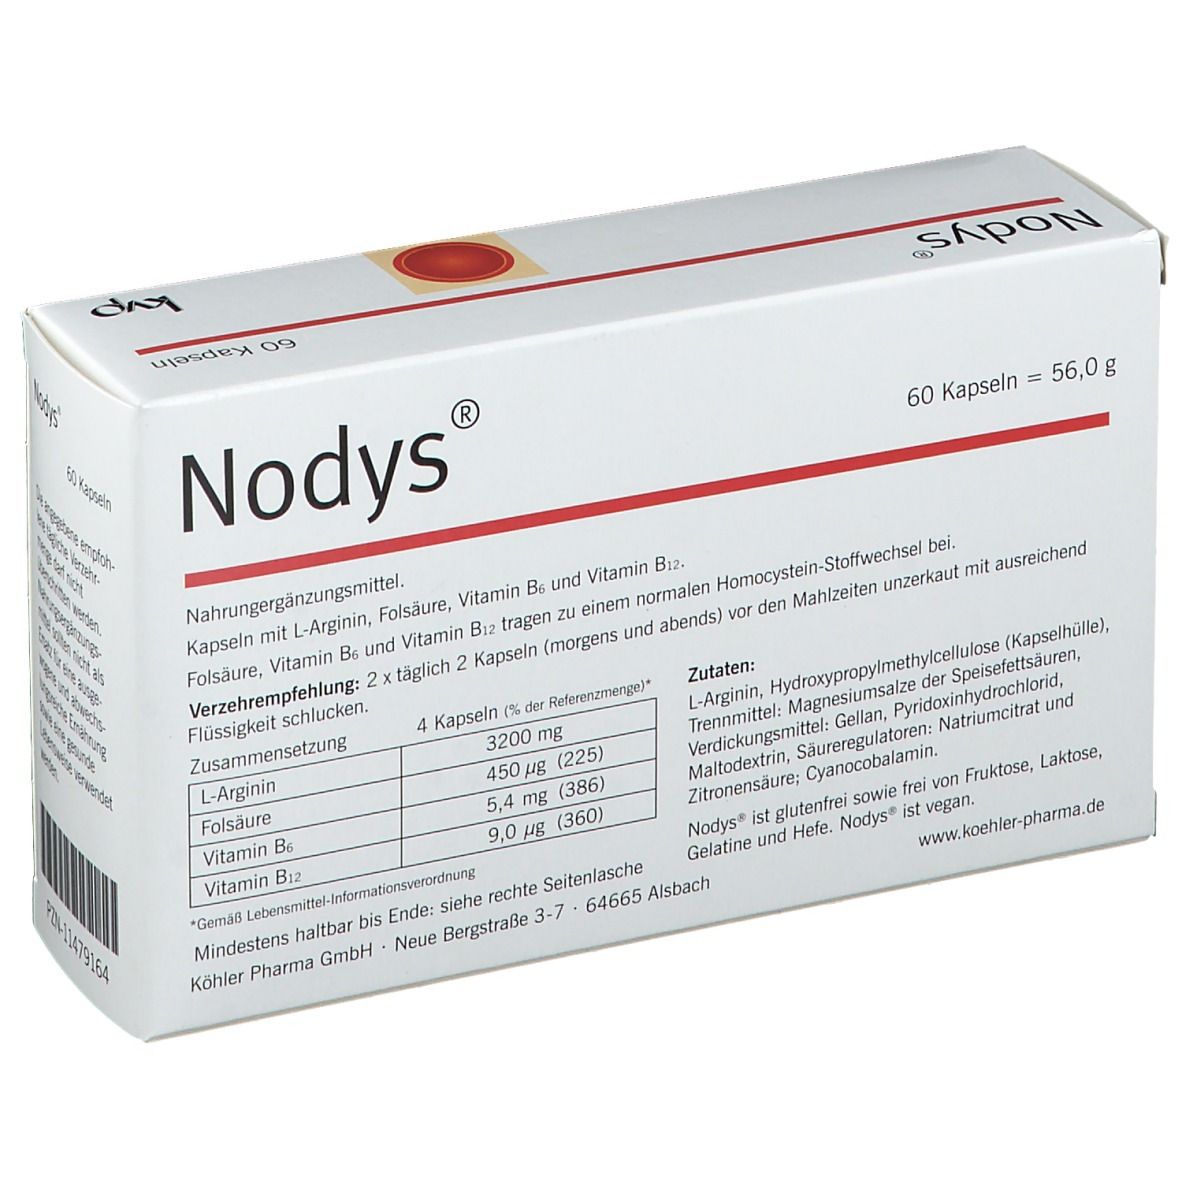 NODYS®